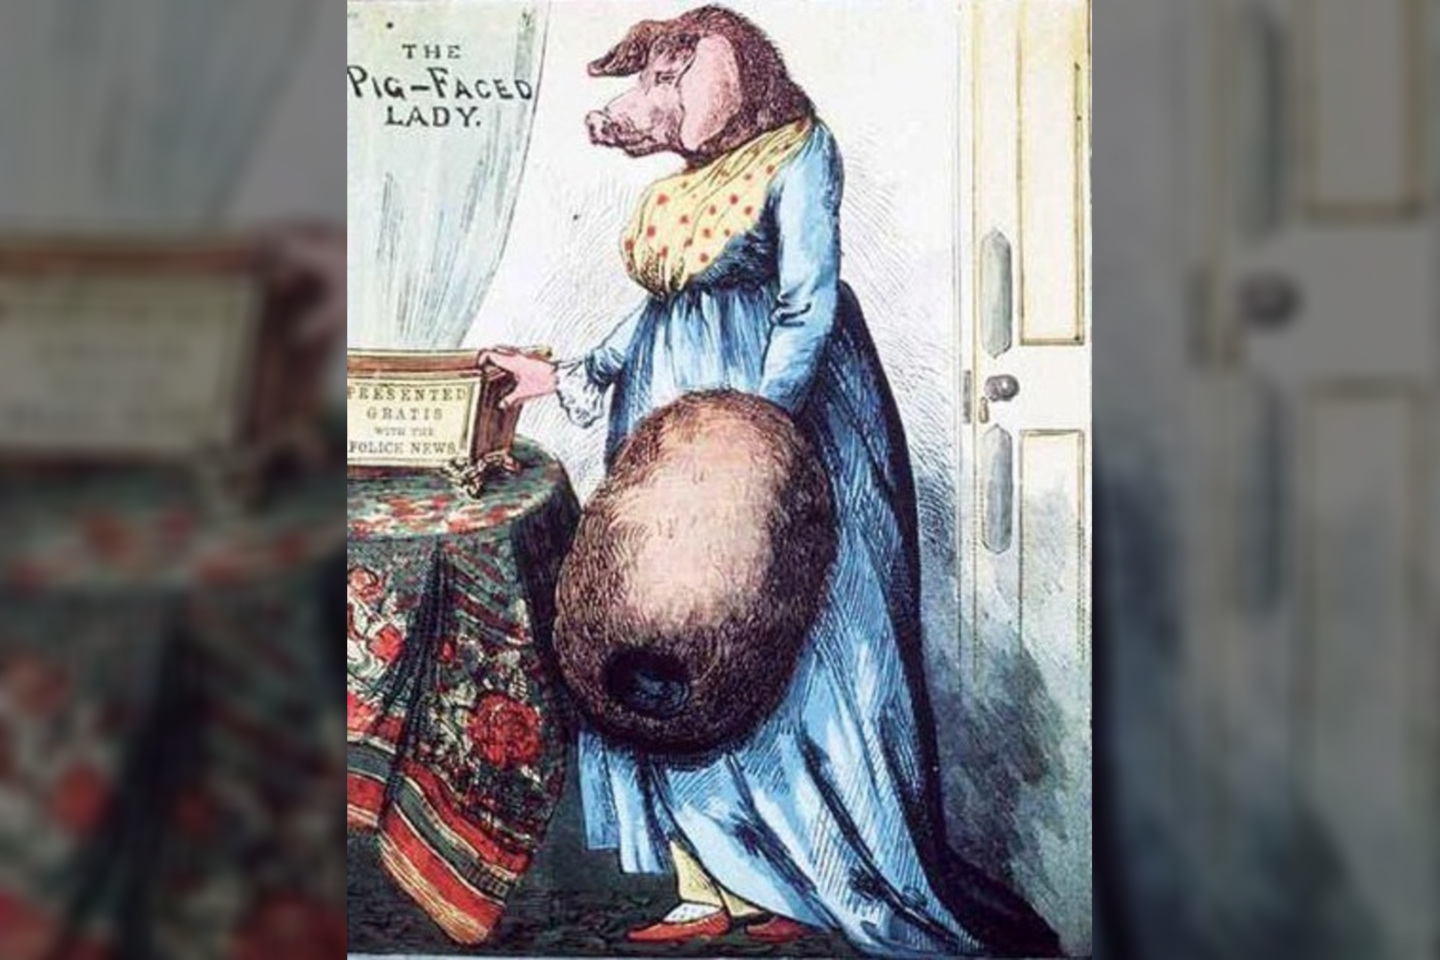  Dėl nežinomų priežasčių, kurios greičiausiai buvo susijusios su prietarais ir nusistatymu prieš moteris, XVII amžiuje atsirado legenda apie sutvėrimą, kuris turėjo moters kūną ir kiaulės galvą.<br> „The Illustrated Police News“ iliustr.